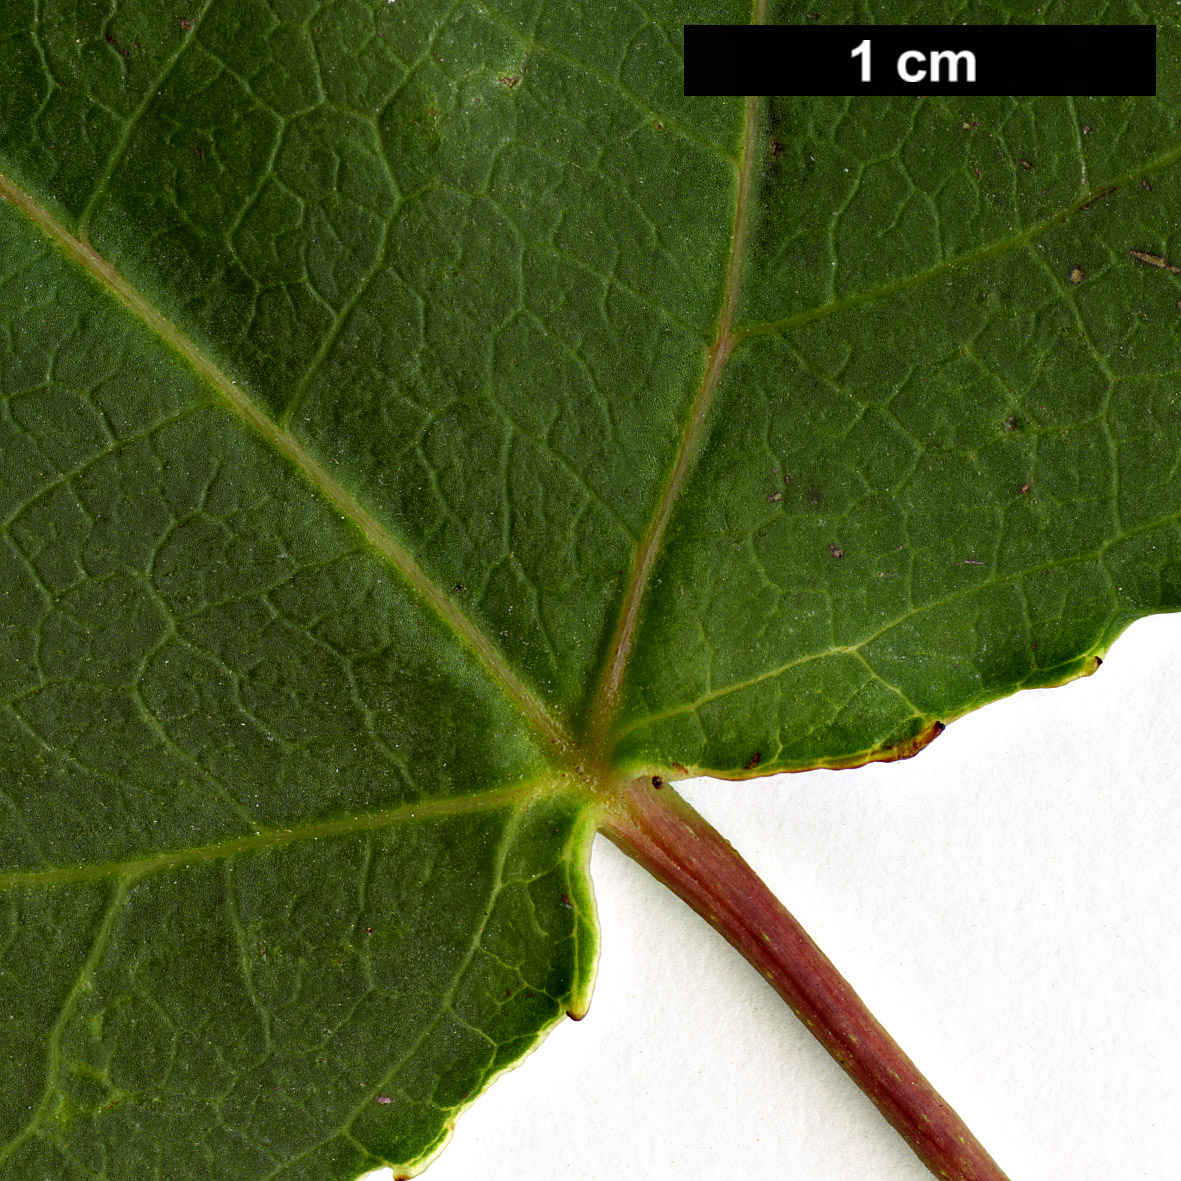 High resolution image: Family: Altingiaceae - Genus: Liquidambar - Taxon: formosana - SpeciesSub: Monticola Group